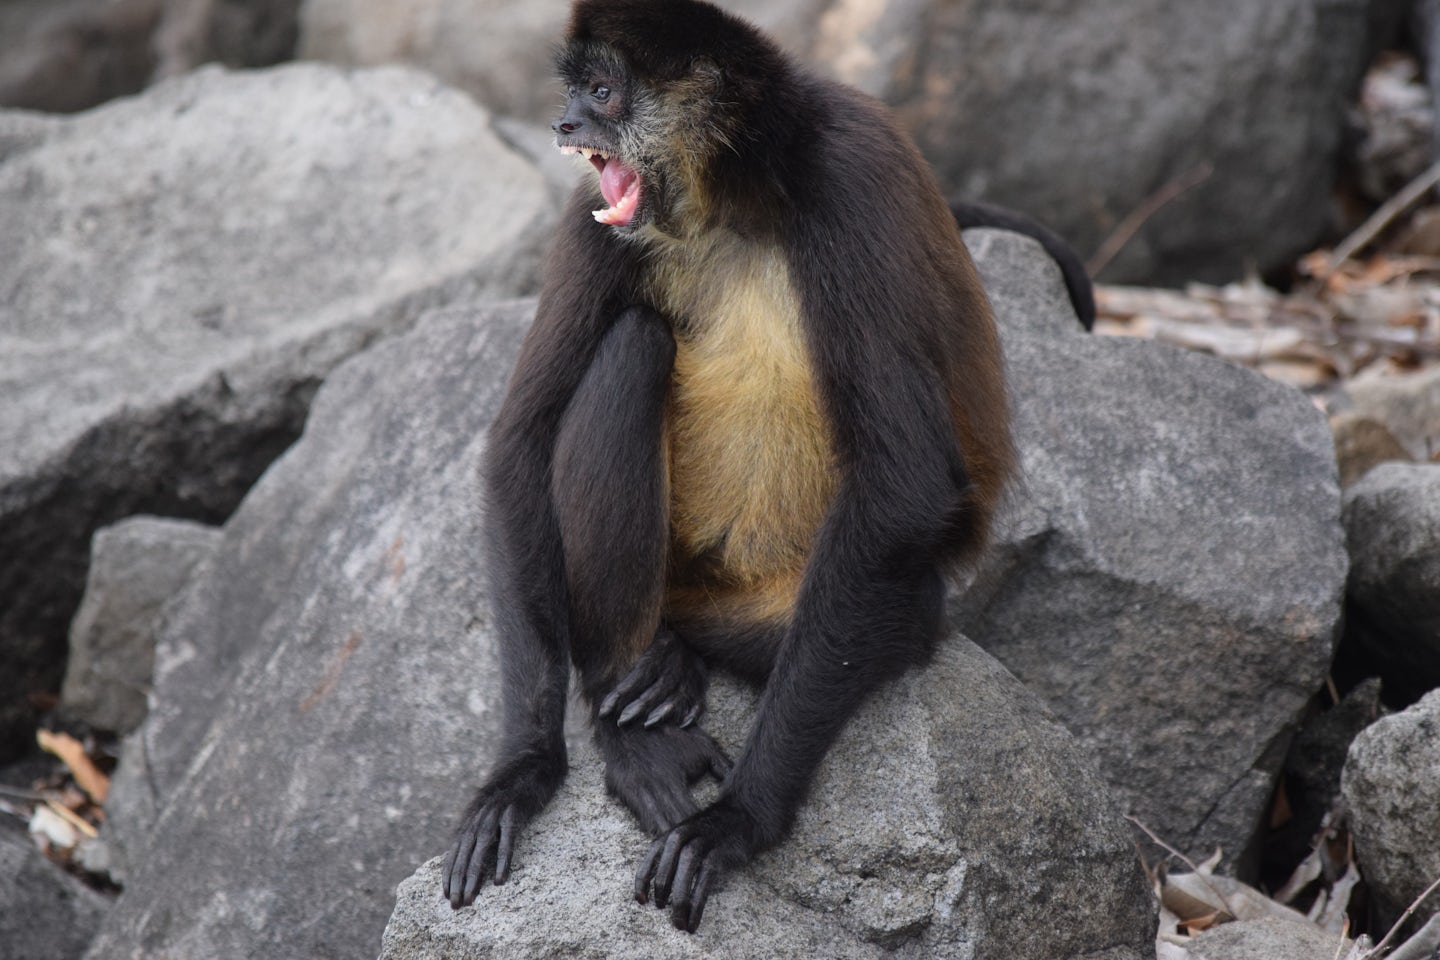 The monkeys of Monkey Island in Nicaragua don